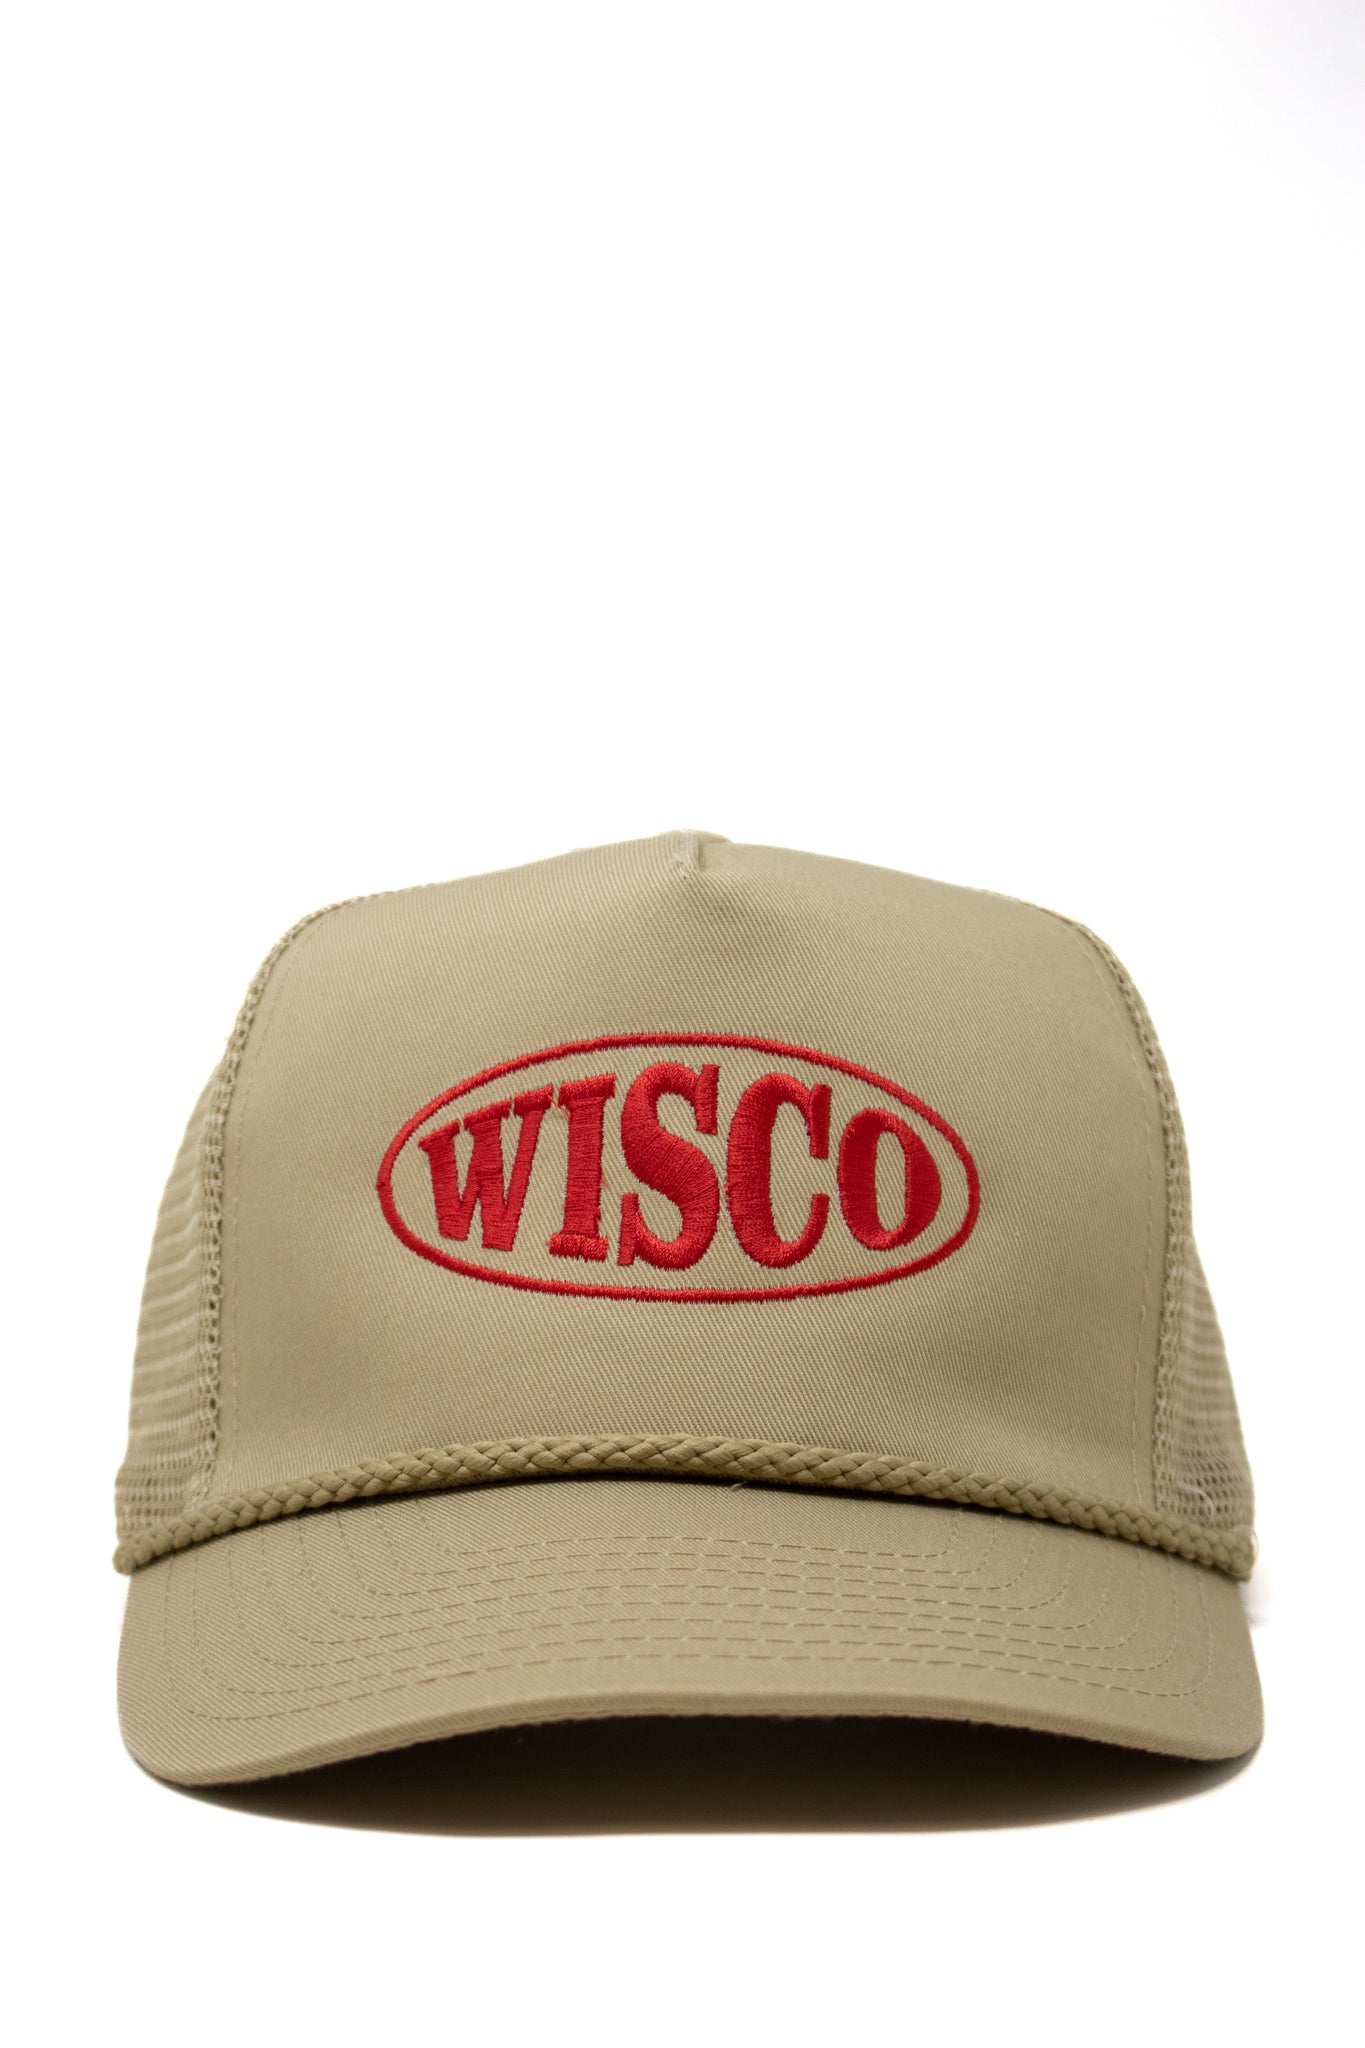 Oval Wisco Trucker